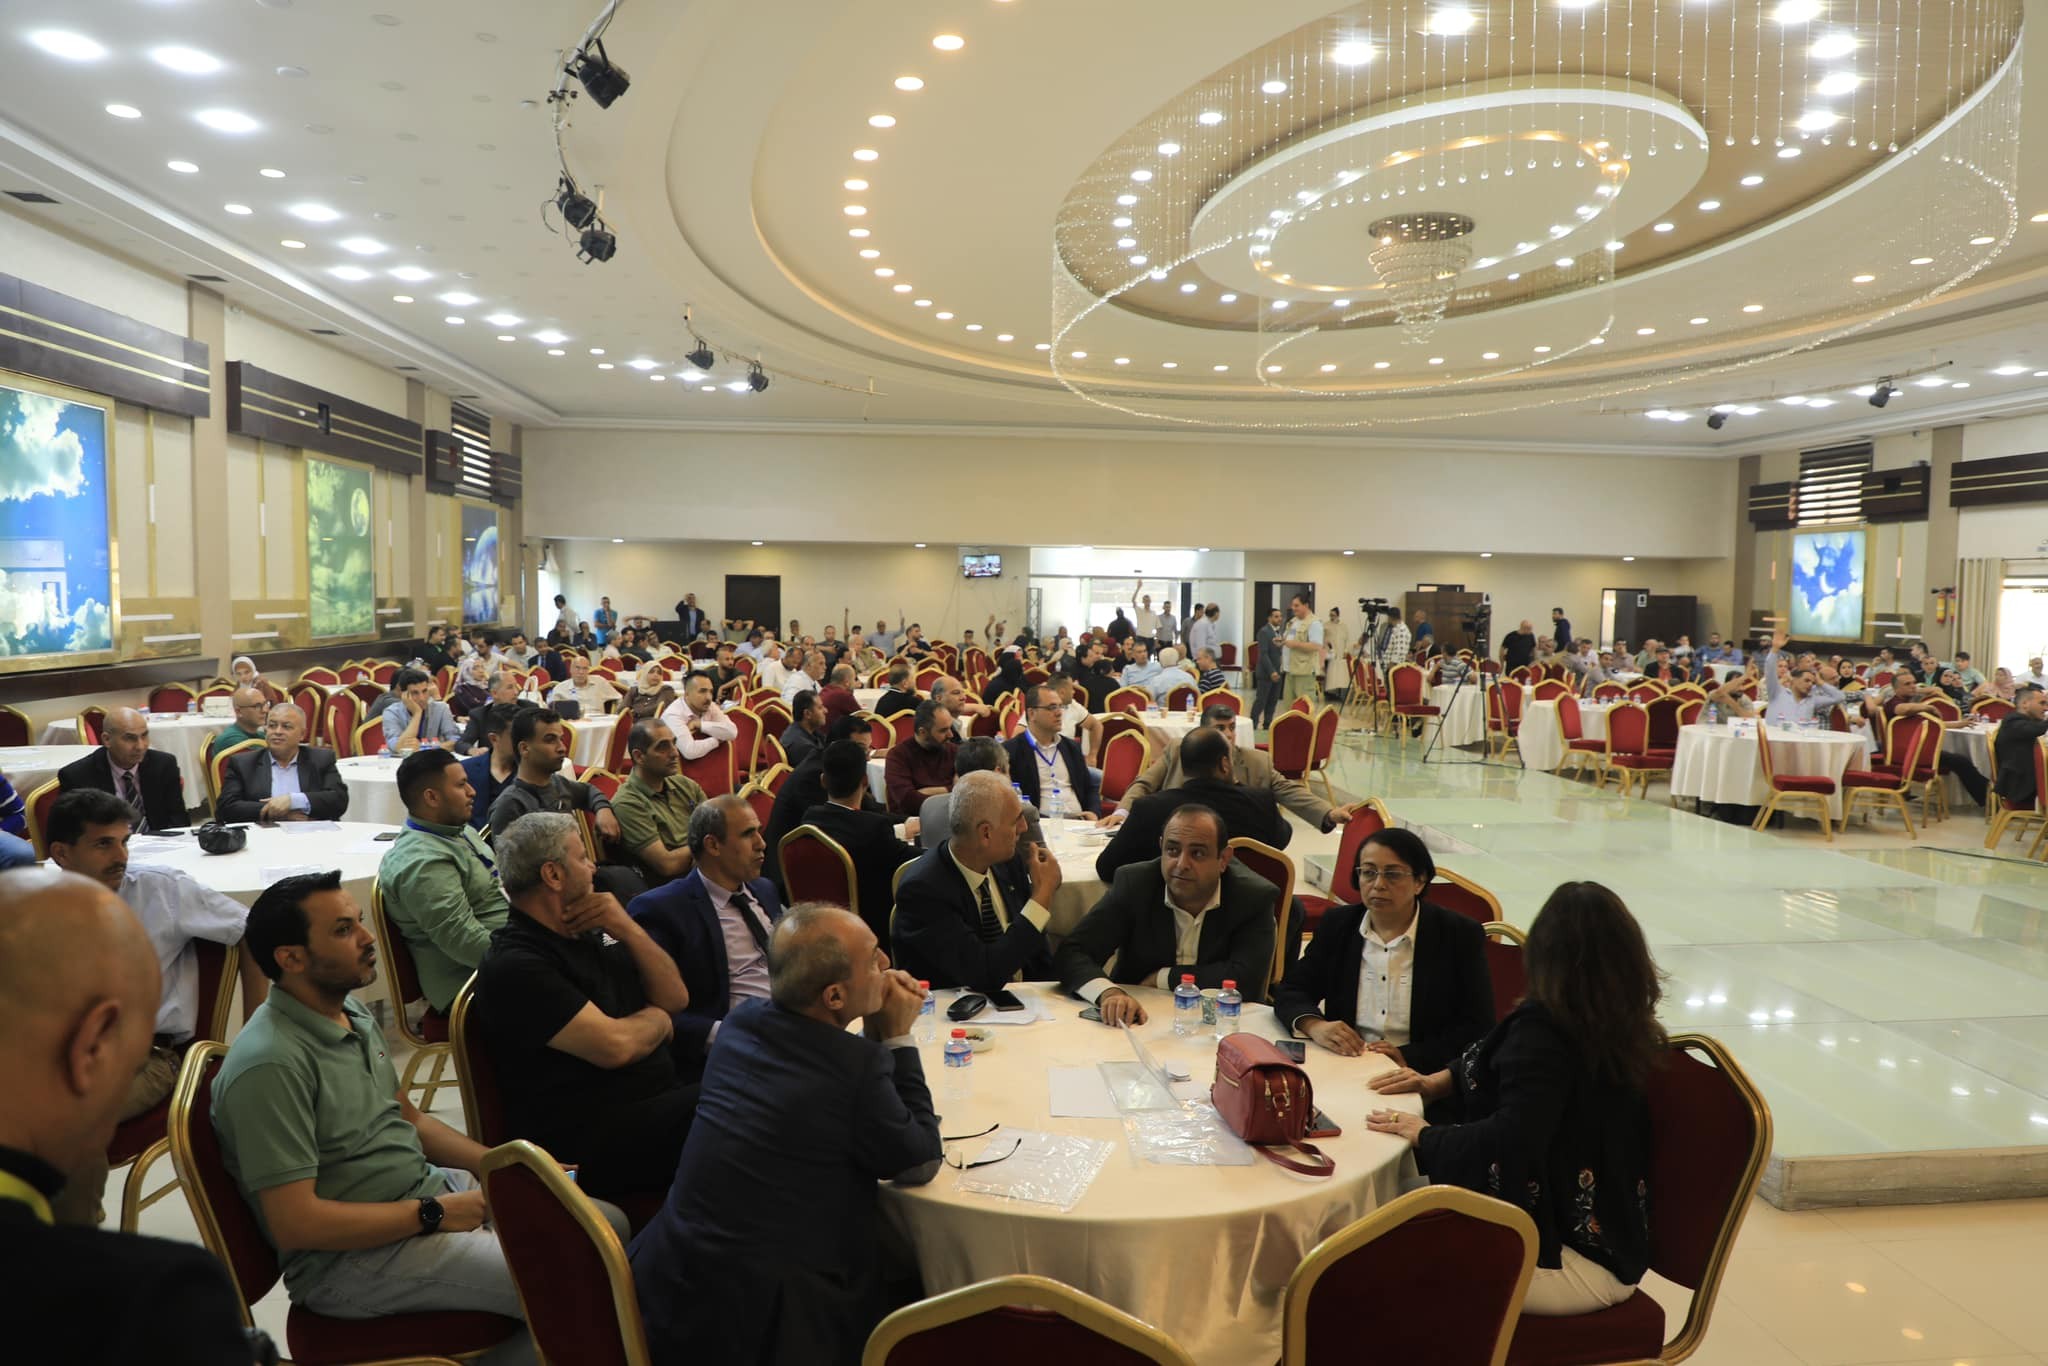 نقابة الصحفيين الفلسطينيين تختتم بنجاح مؤتمرها العام وتعتمد قرارات مهمة.jpg